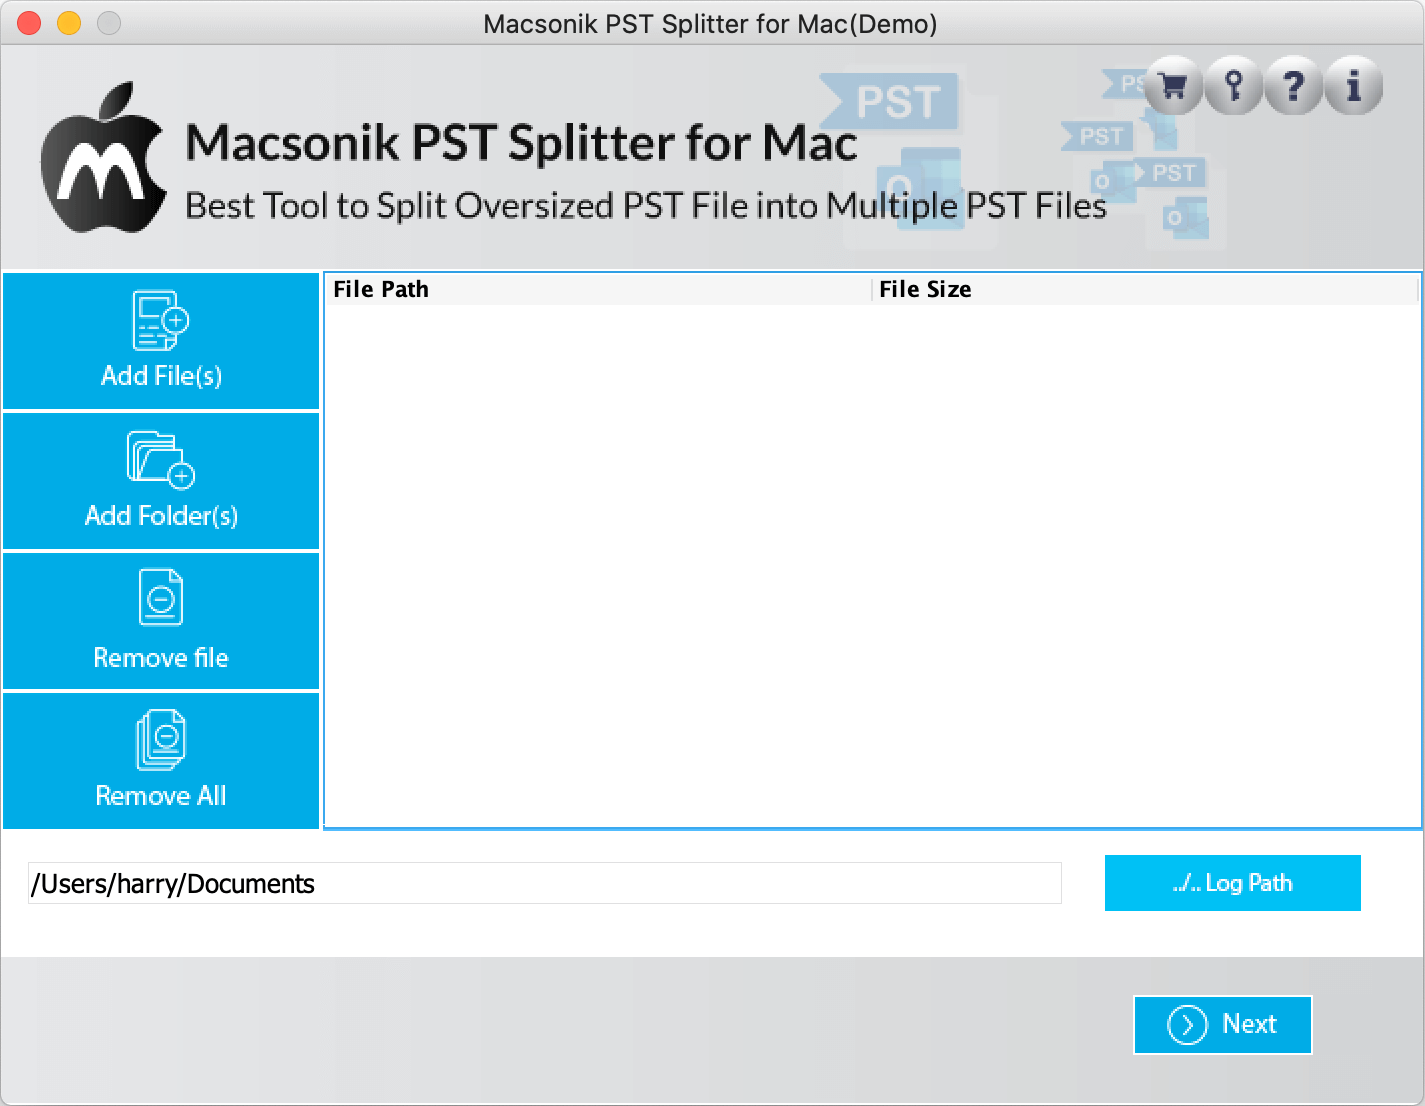 MacSonik PST Splitter 21.9 : Main Window